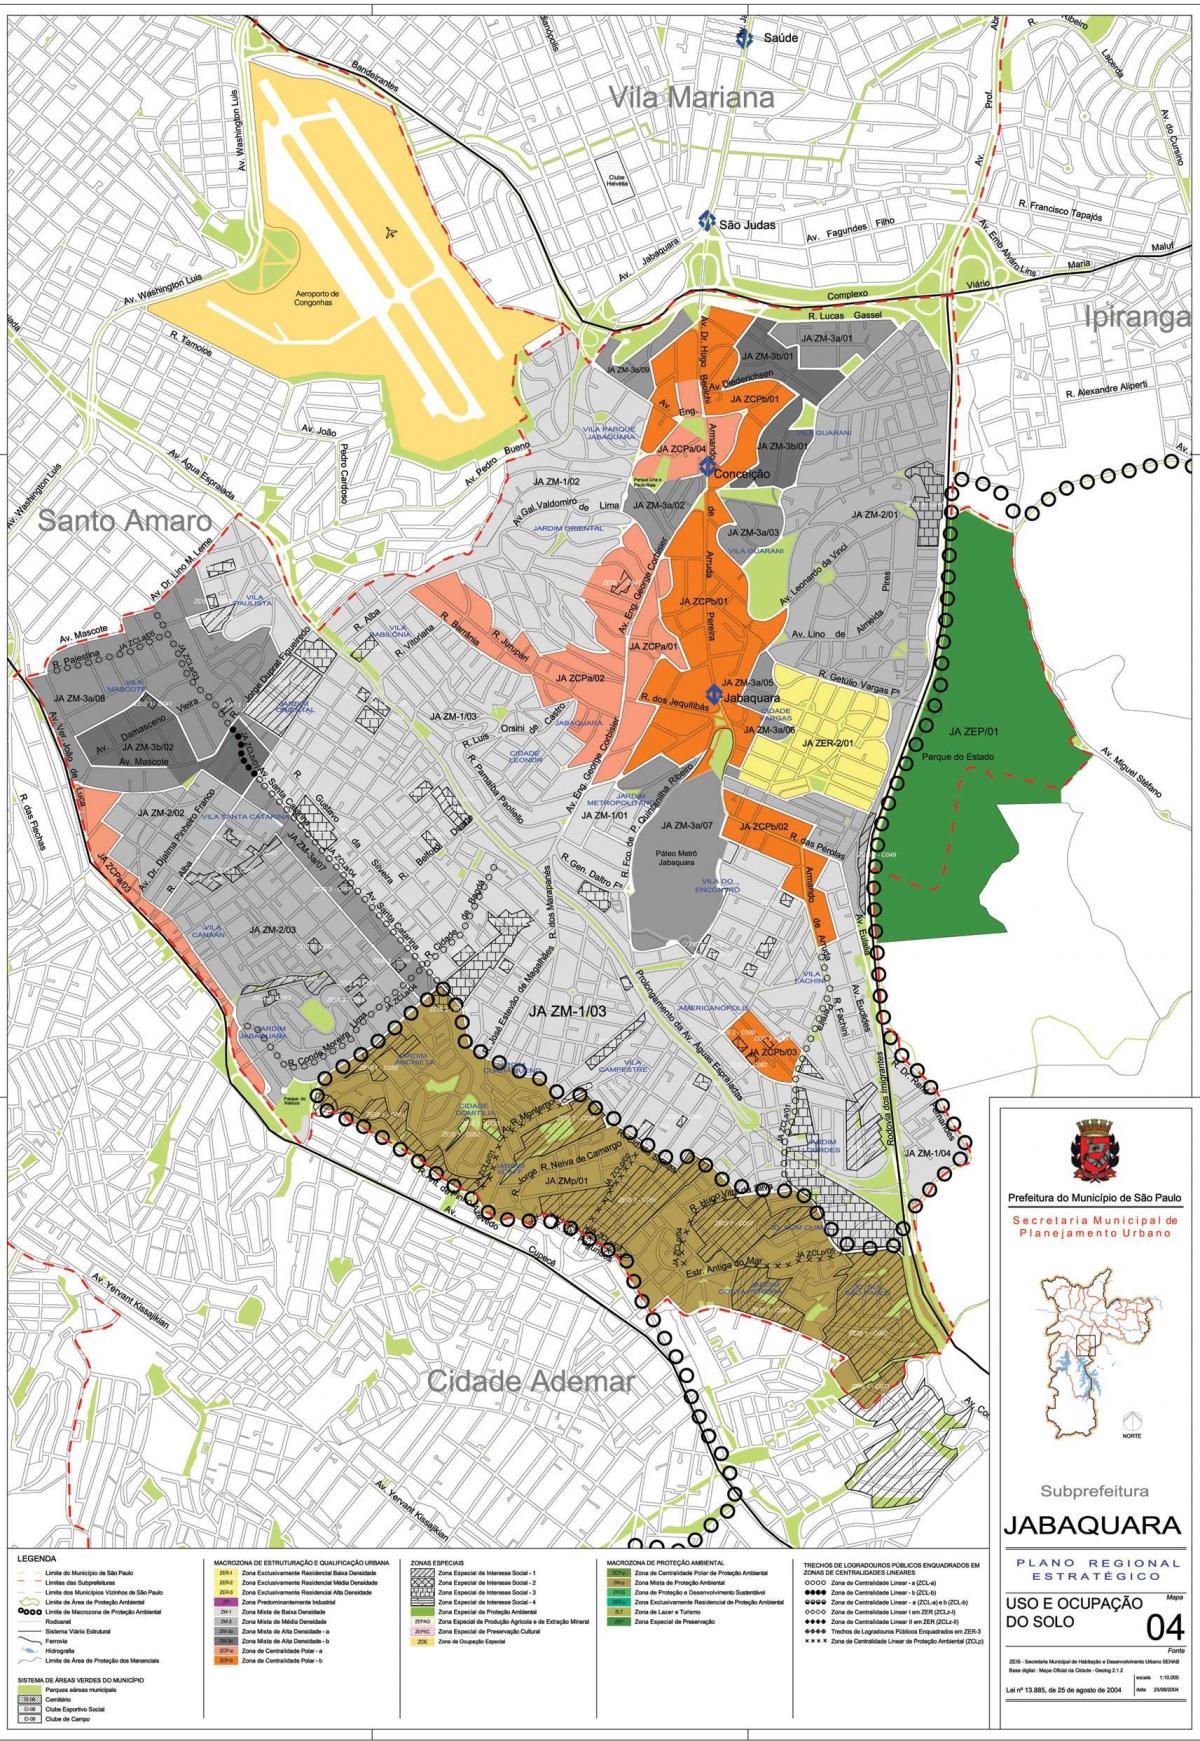 Bản đồ của Jabaquara São Paulo - Nghề nghiệp của đất